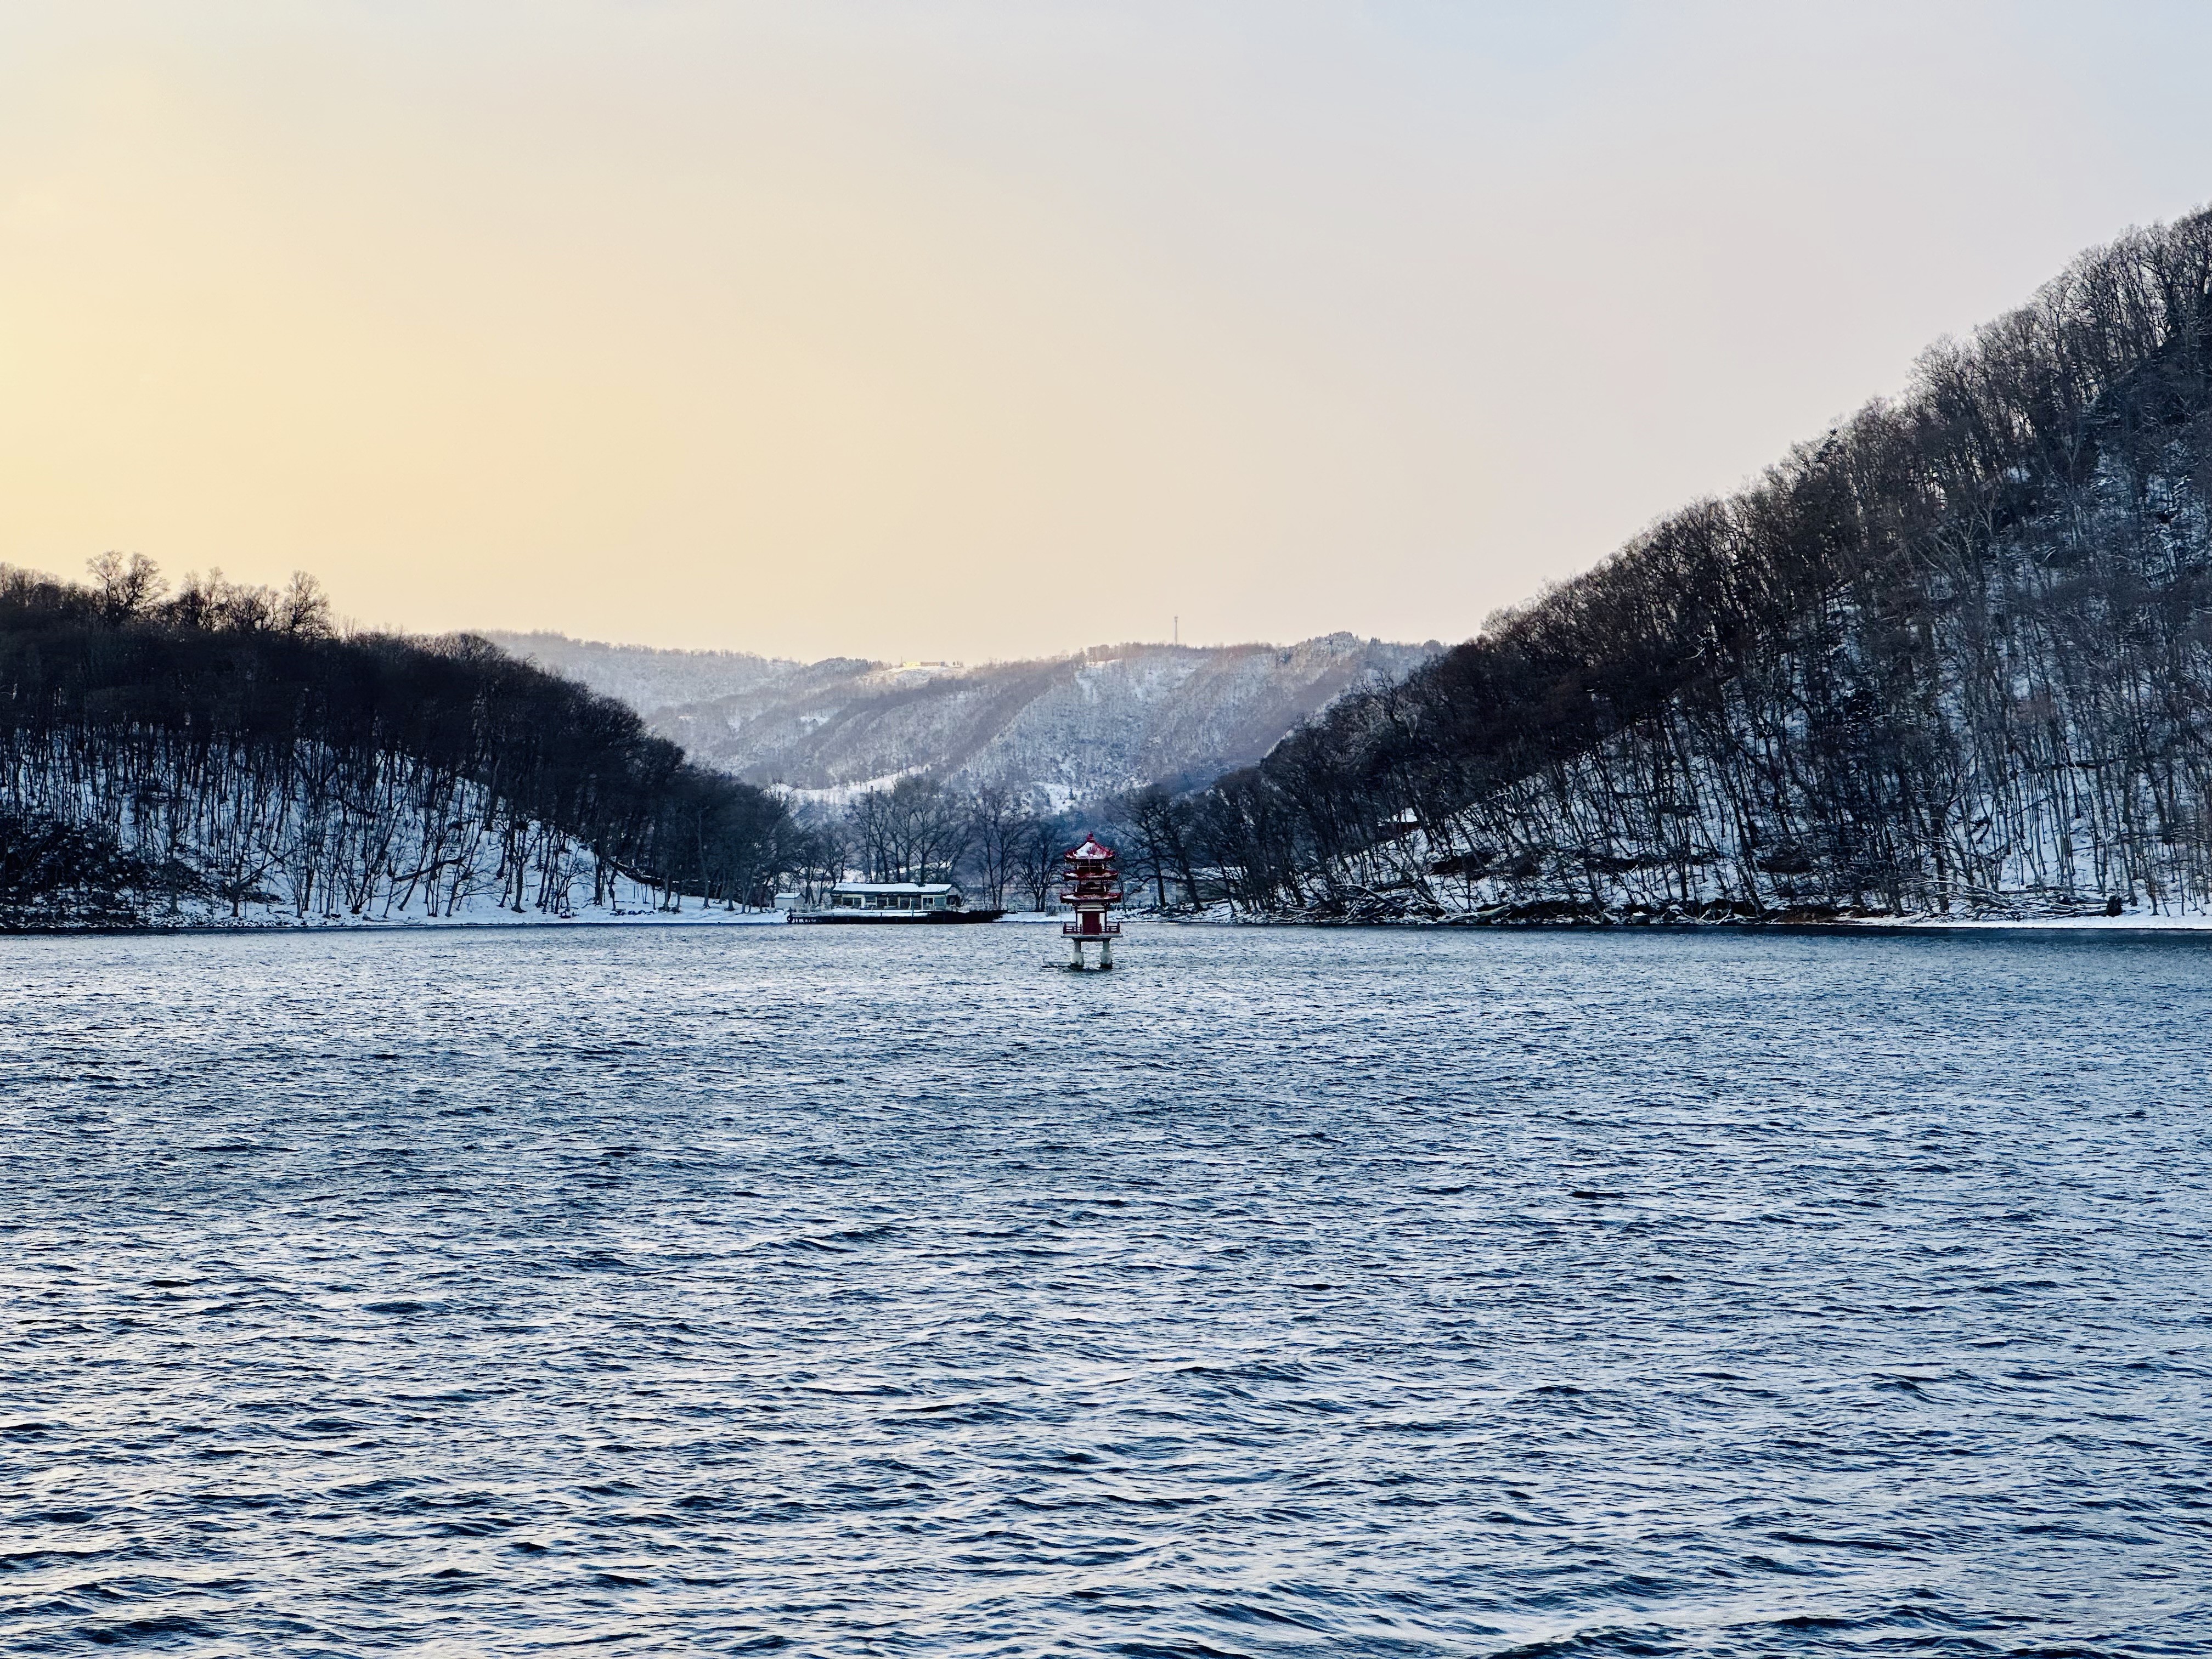 一場冬季日本之旅：北海道&仙台